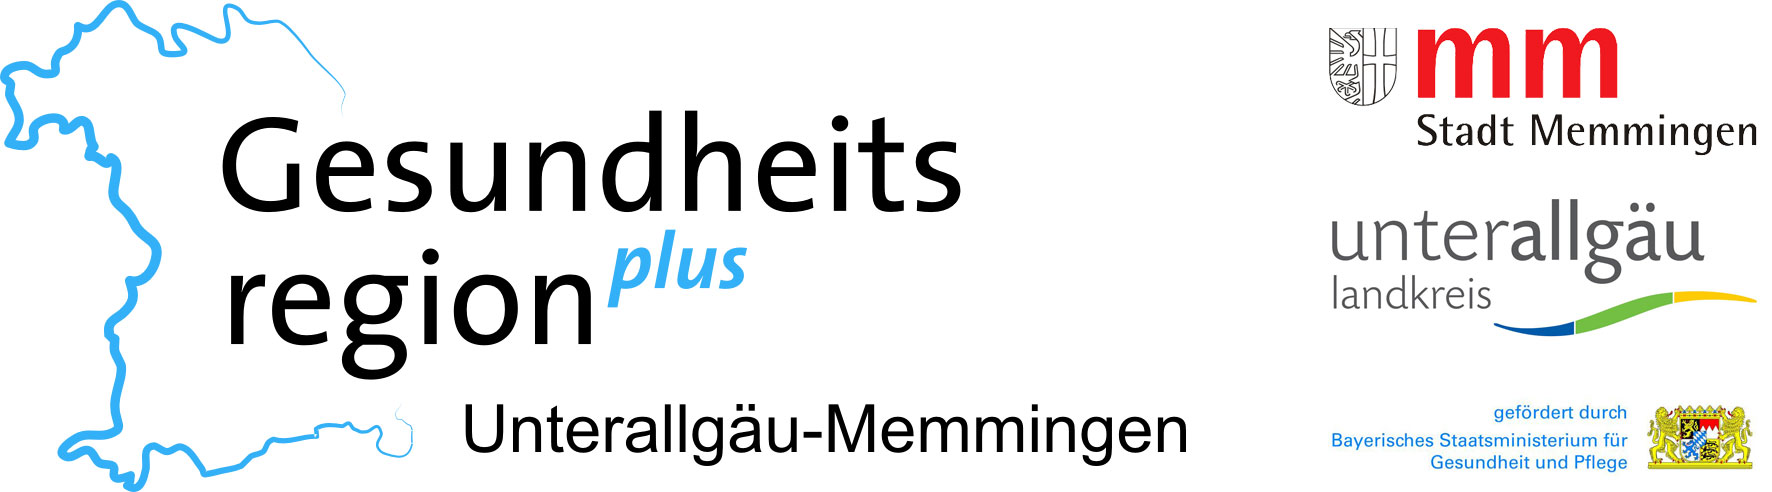 Das Logo Gesundheit Plus